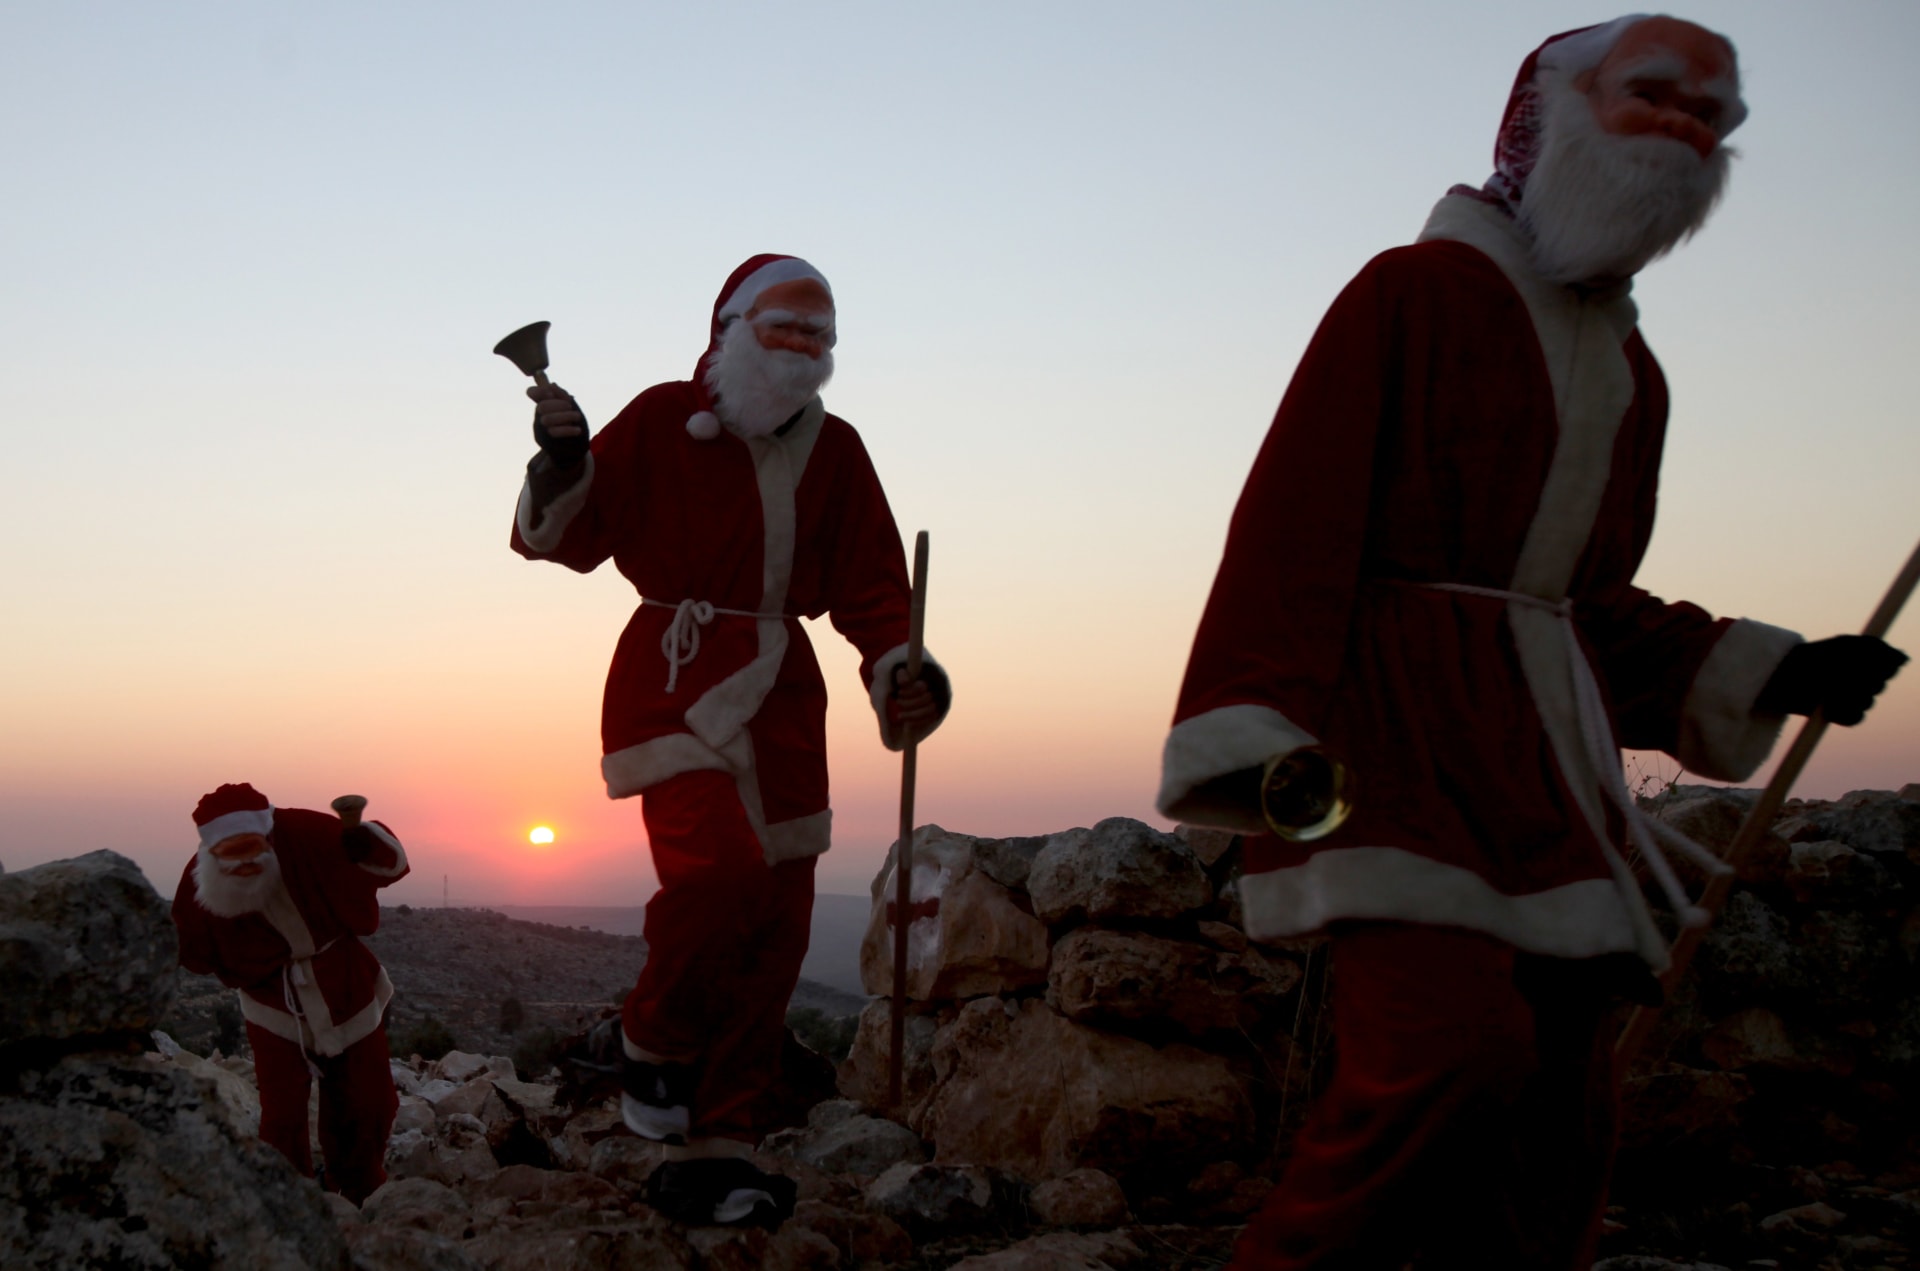 صورة ارشيفية (تعبيرية) لأشخاص يرتدون زي "بابا نويل" احتفالا بعيد الميلاد في قرى فلسطينية